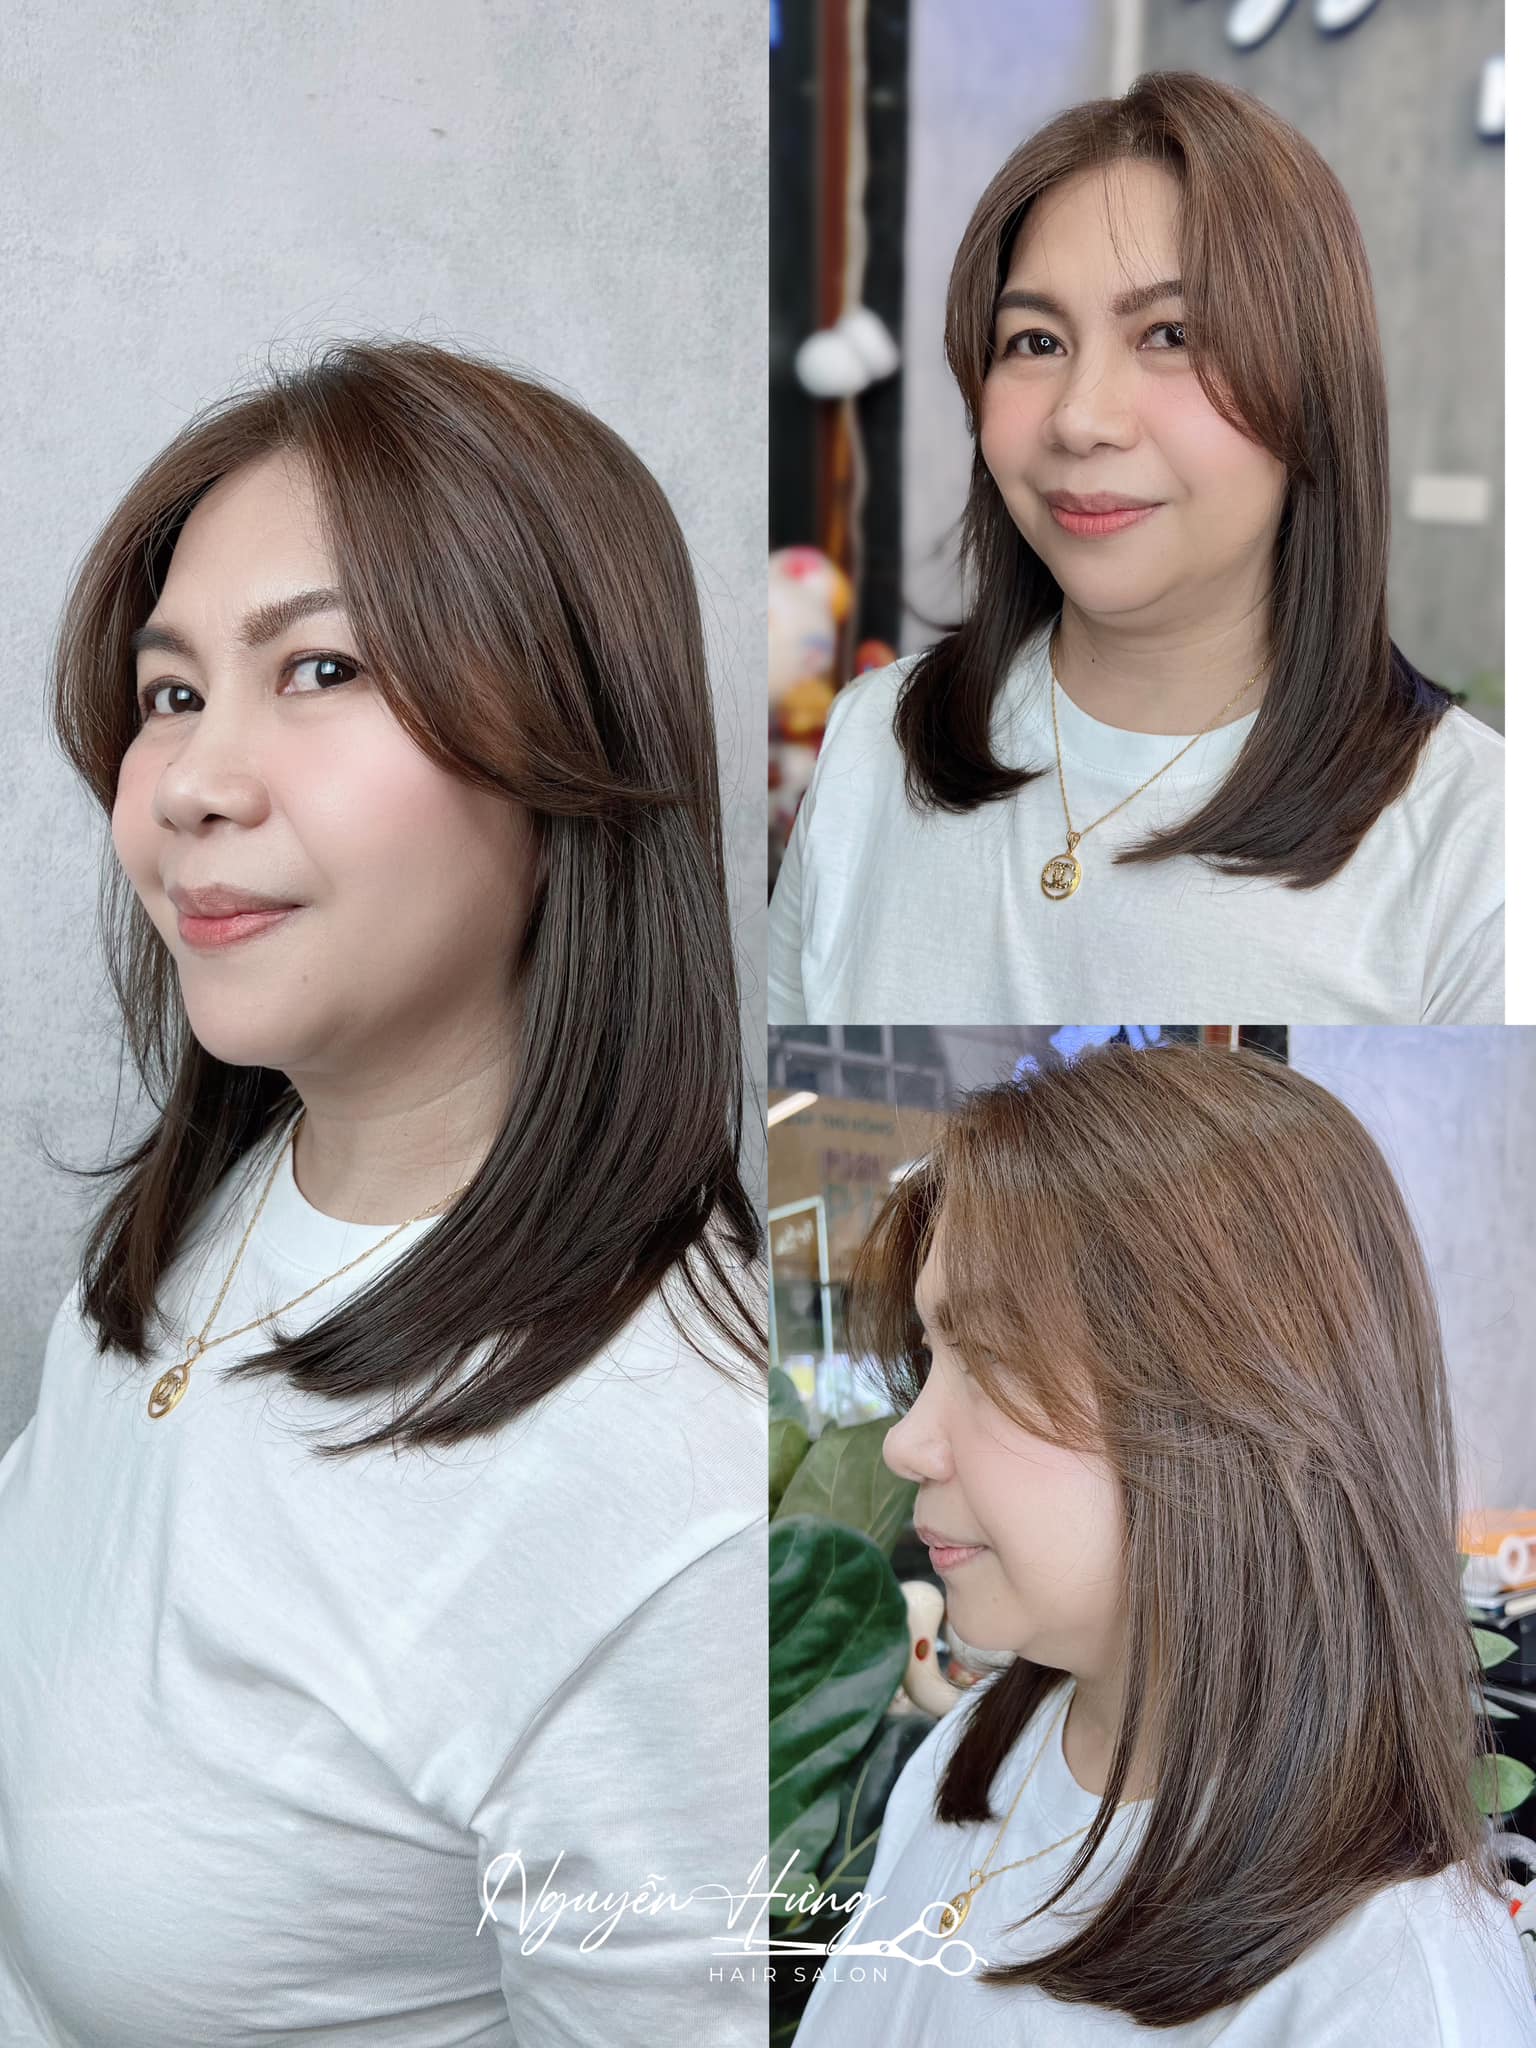 Nguyễn Hưng Hair Salon ảnh 2